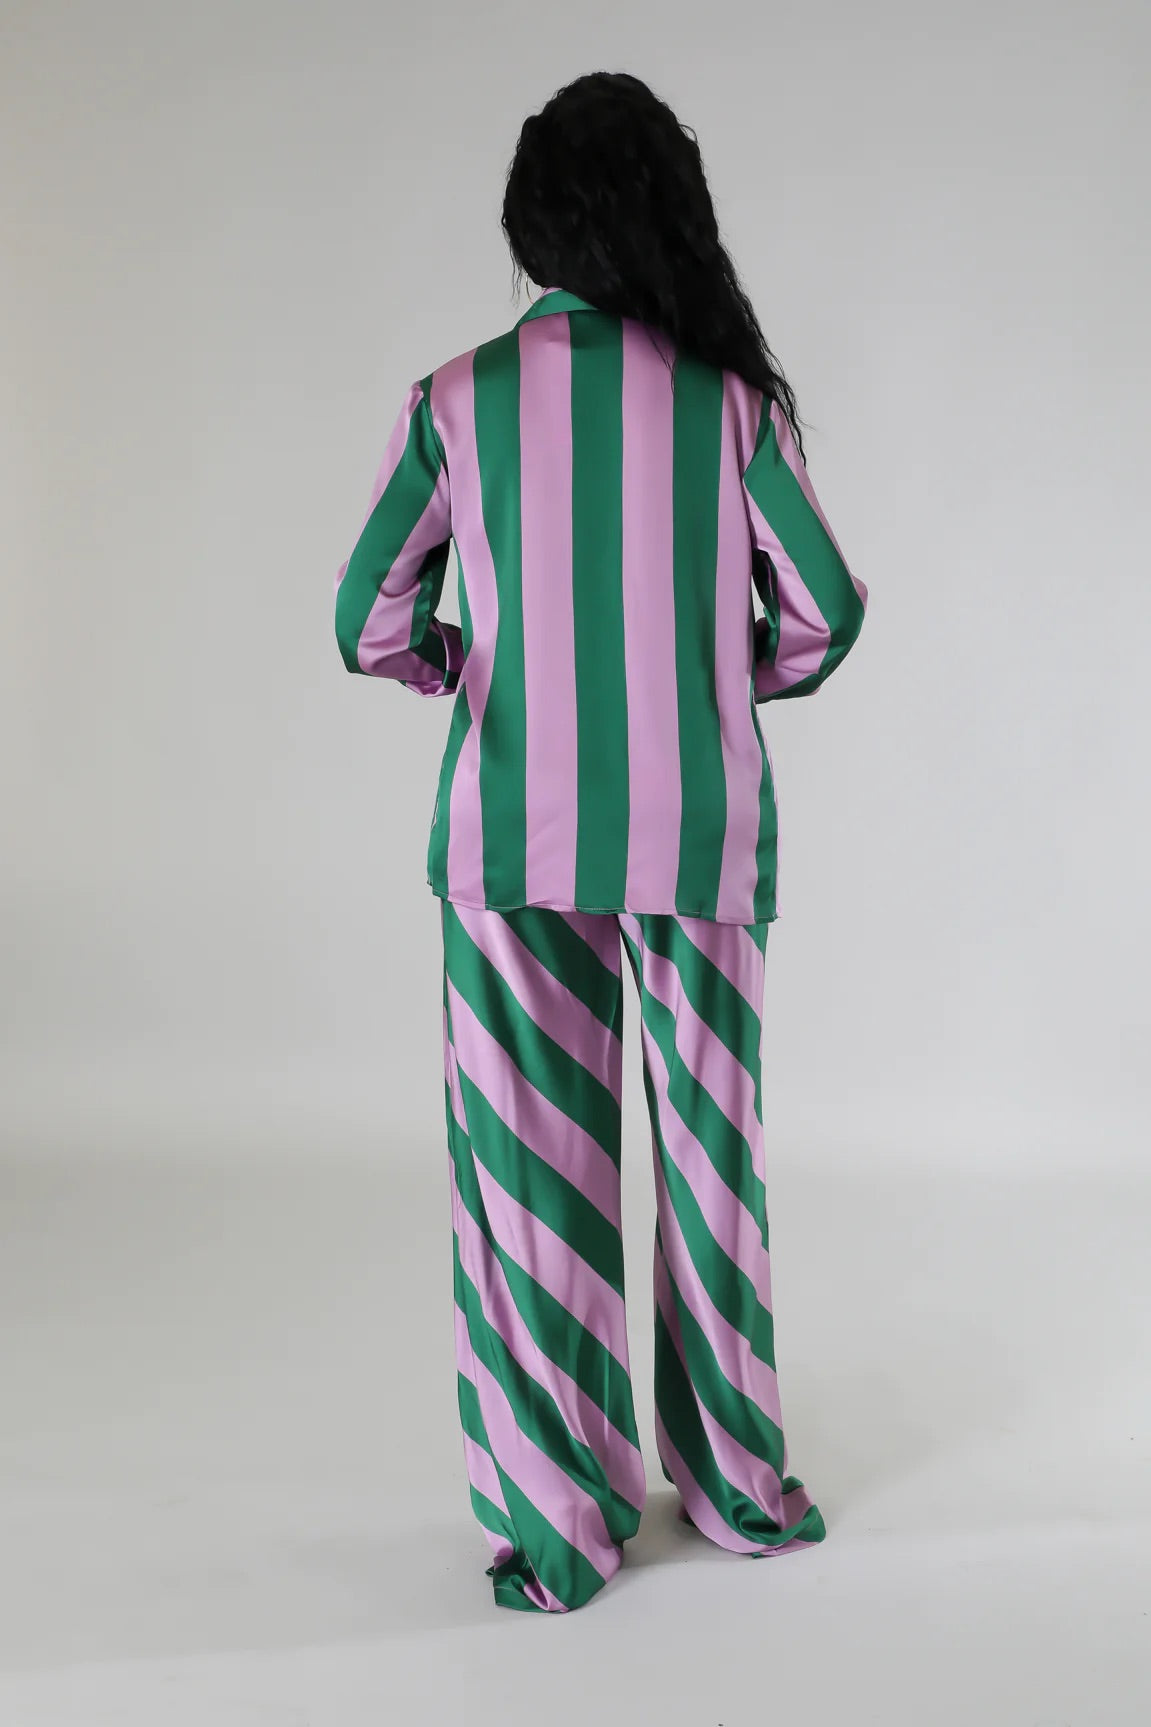 Sugar & Spice Striped Silky Pant Set Multi Green - Ali’s Couture 